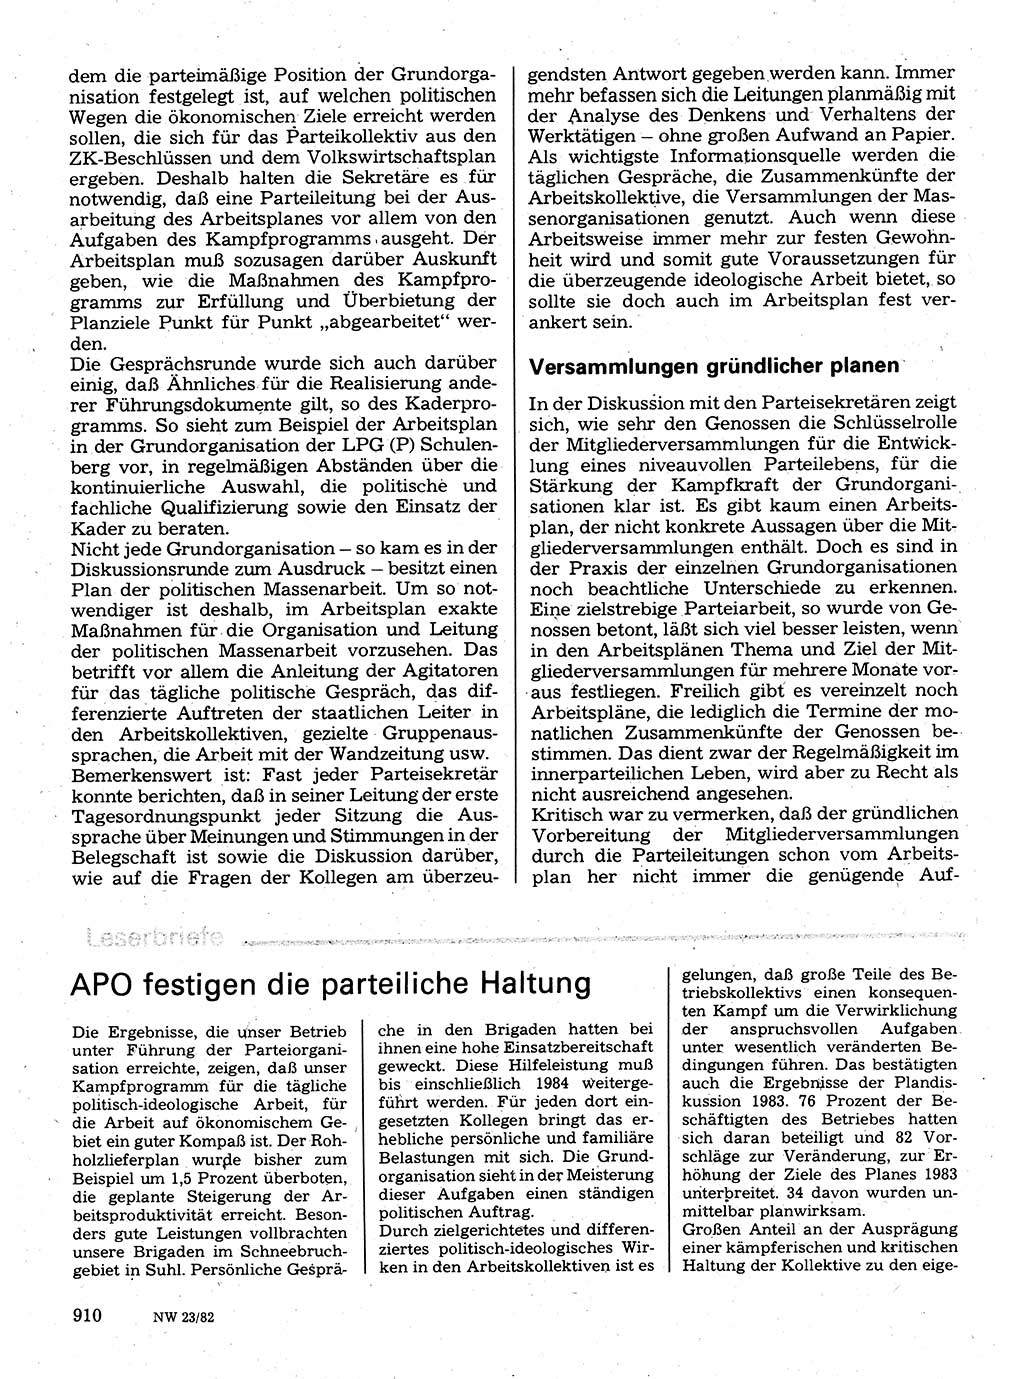 Neuer Weg (NW), Organ des Zentralkomitees (ZK) der SED (Sozialistische Einheitspartei Deutschlands) für Fragen des Parteilebens, 37. Jahrgang [Deutsche Demokratische Republik (DDR)] 1982, Seite 910 (NW ZK SED DDR 1982, S. 910)